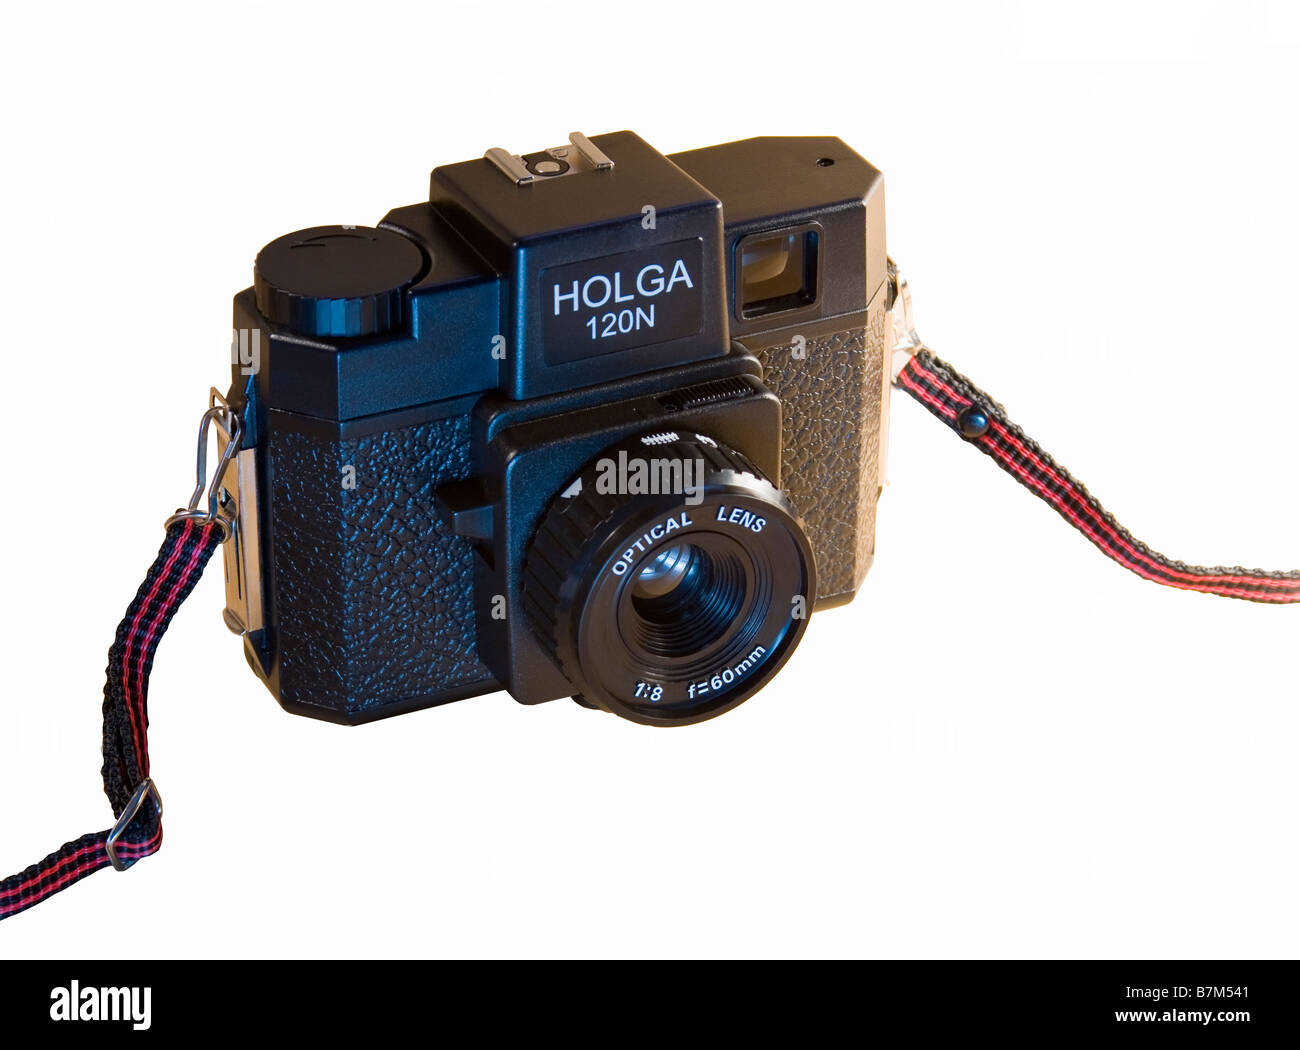 Holga medium format camera e imágenes de alta resolución - Alamy